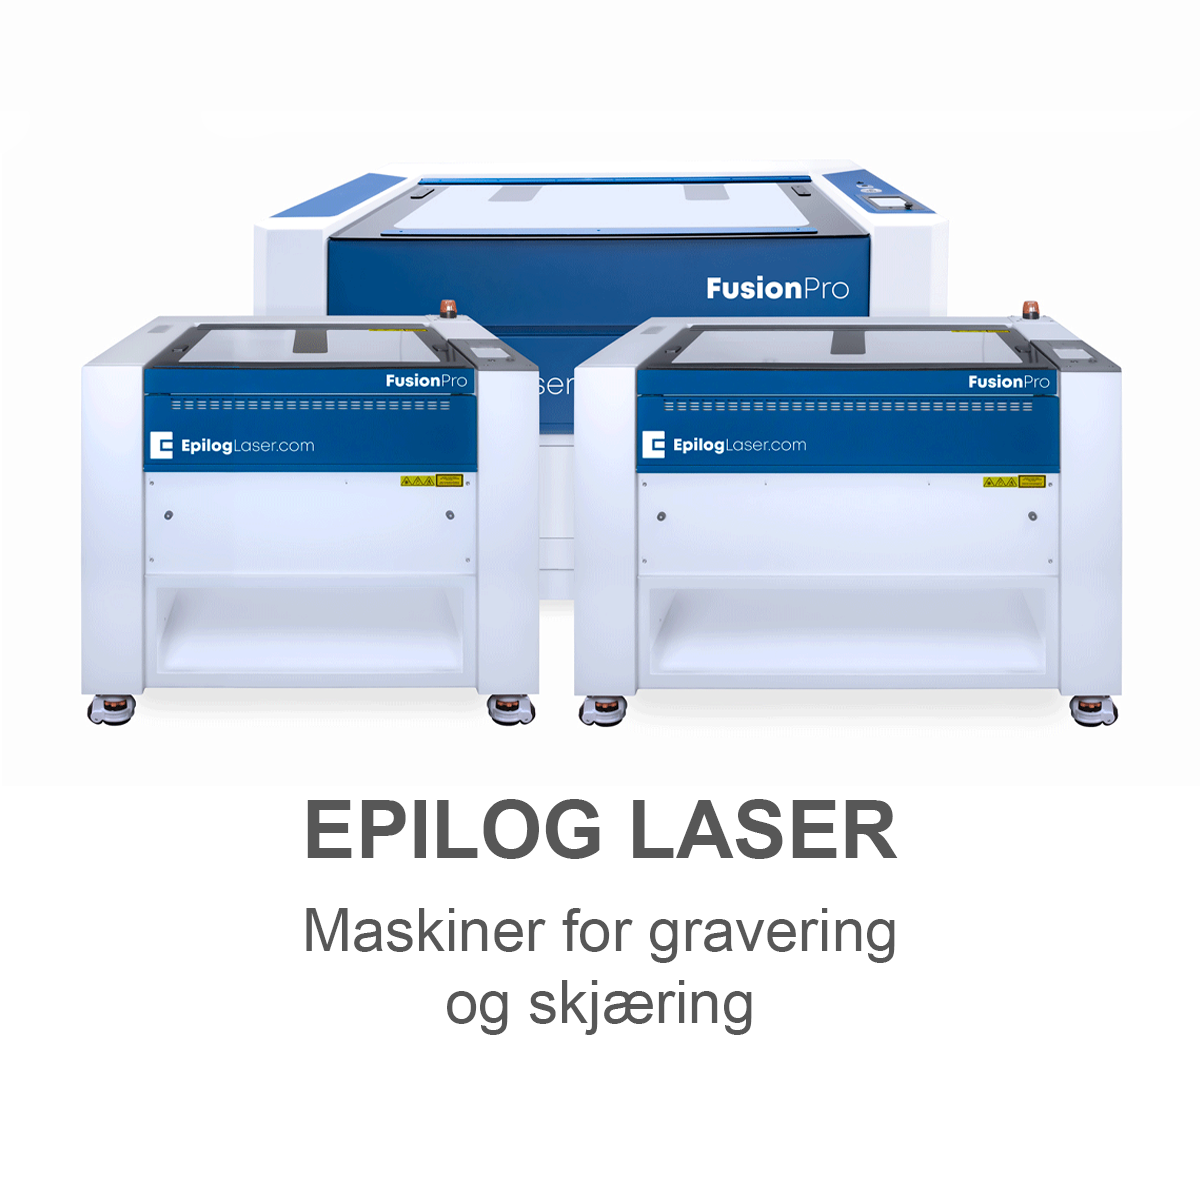 Epilog laser - Maskiner for gravering og skjæring